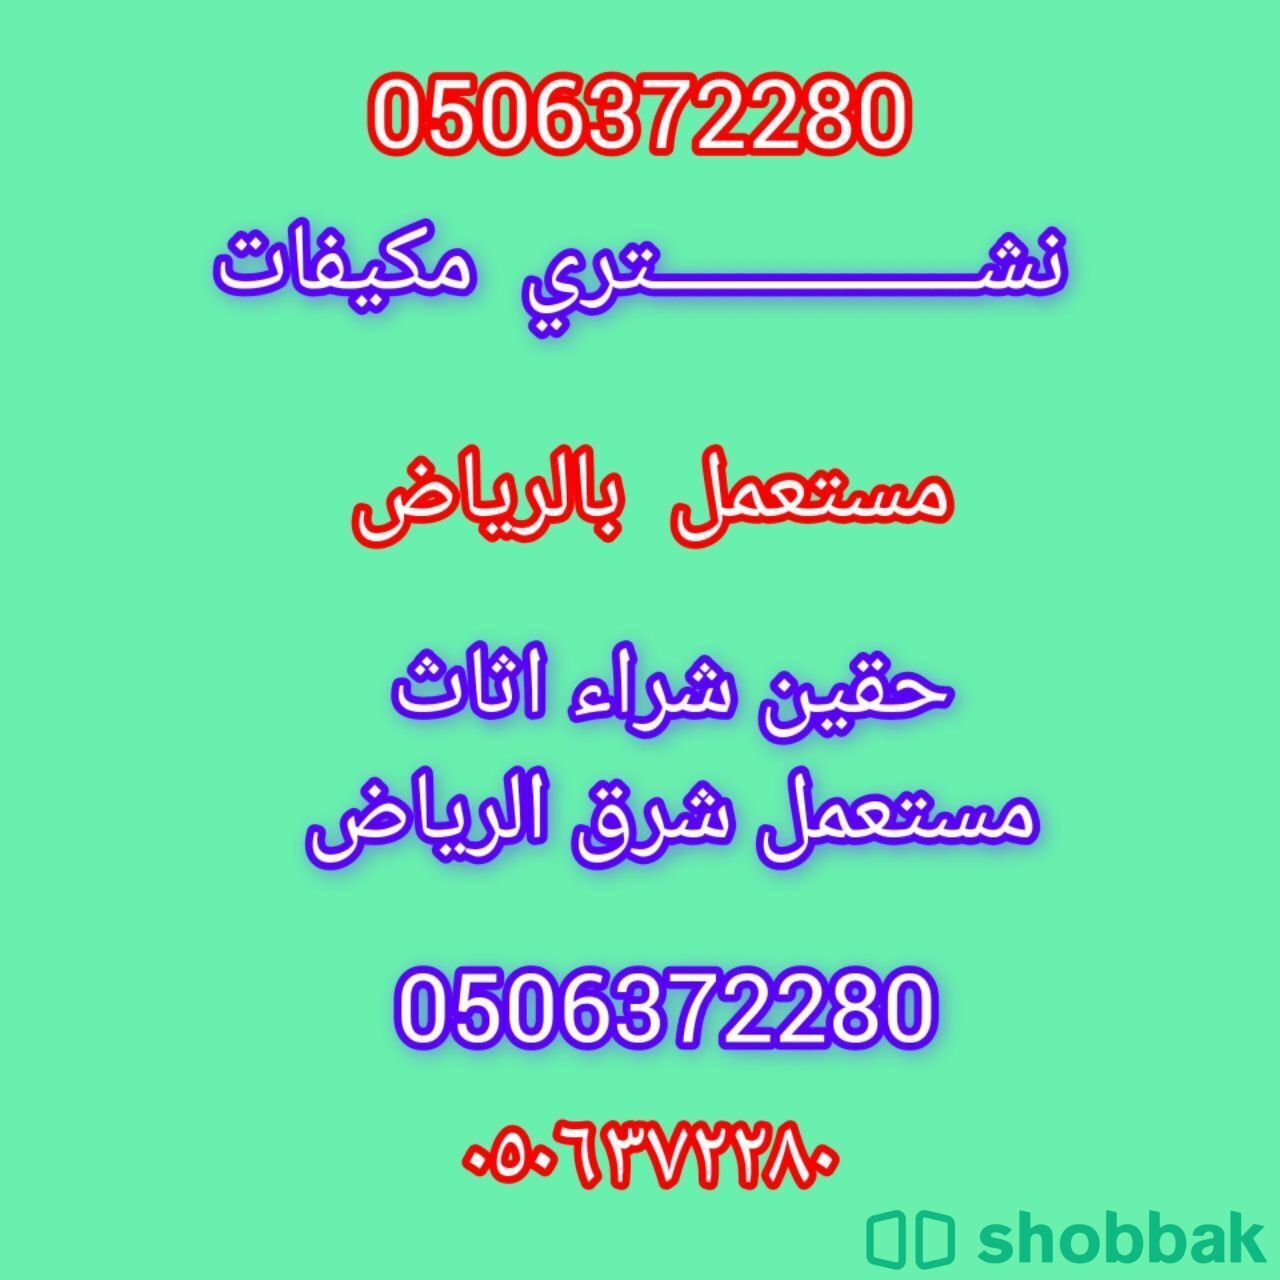 شراء اثاث مستعمل شرق الرياض 0506372280 حي الحاير  شباك السعودية